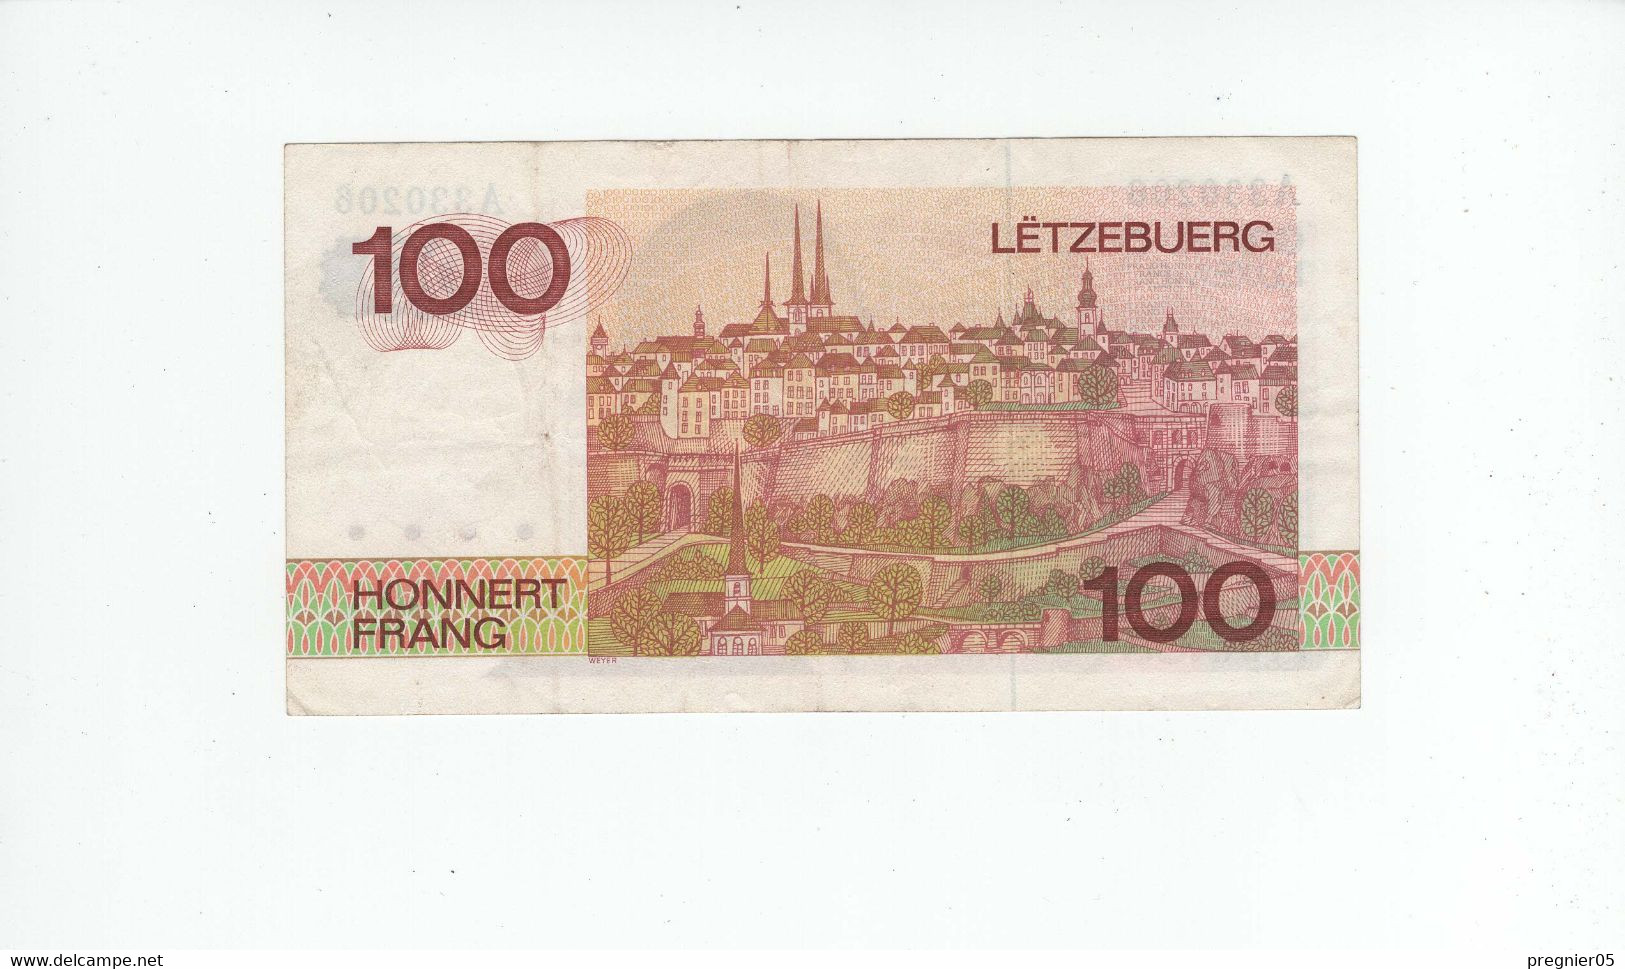 LUXEMBOURG " Baisse De Prix " Billet 100 Francs 1980 SUP P.57-A N° 330206 - Lussemburgo